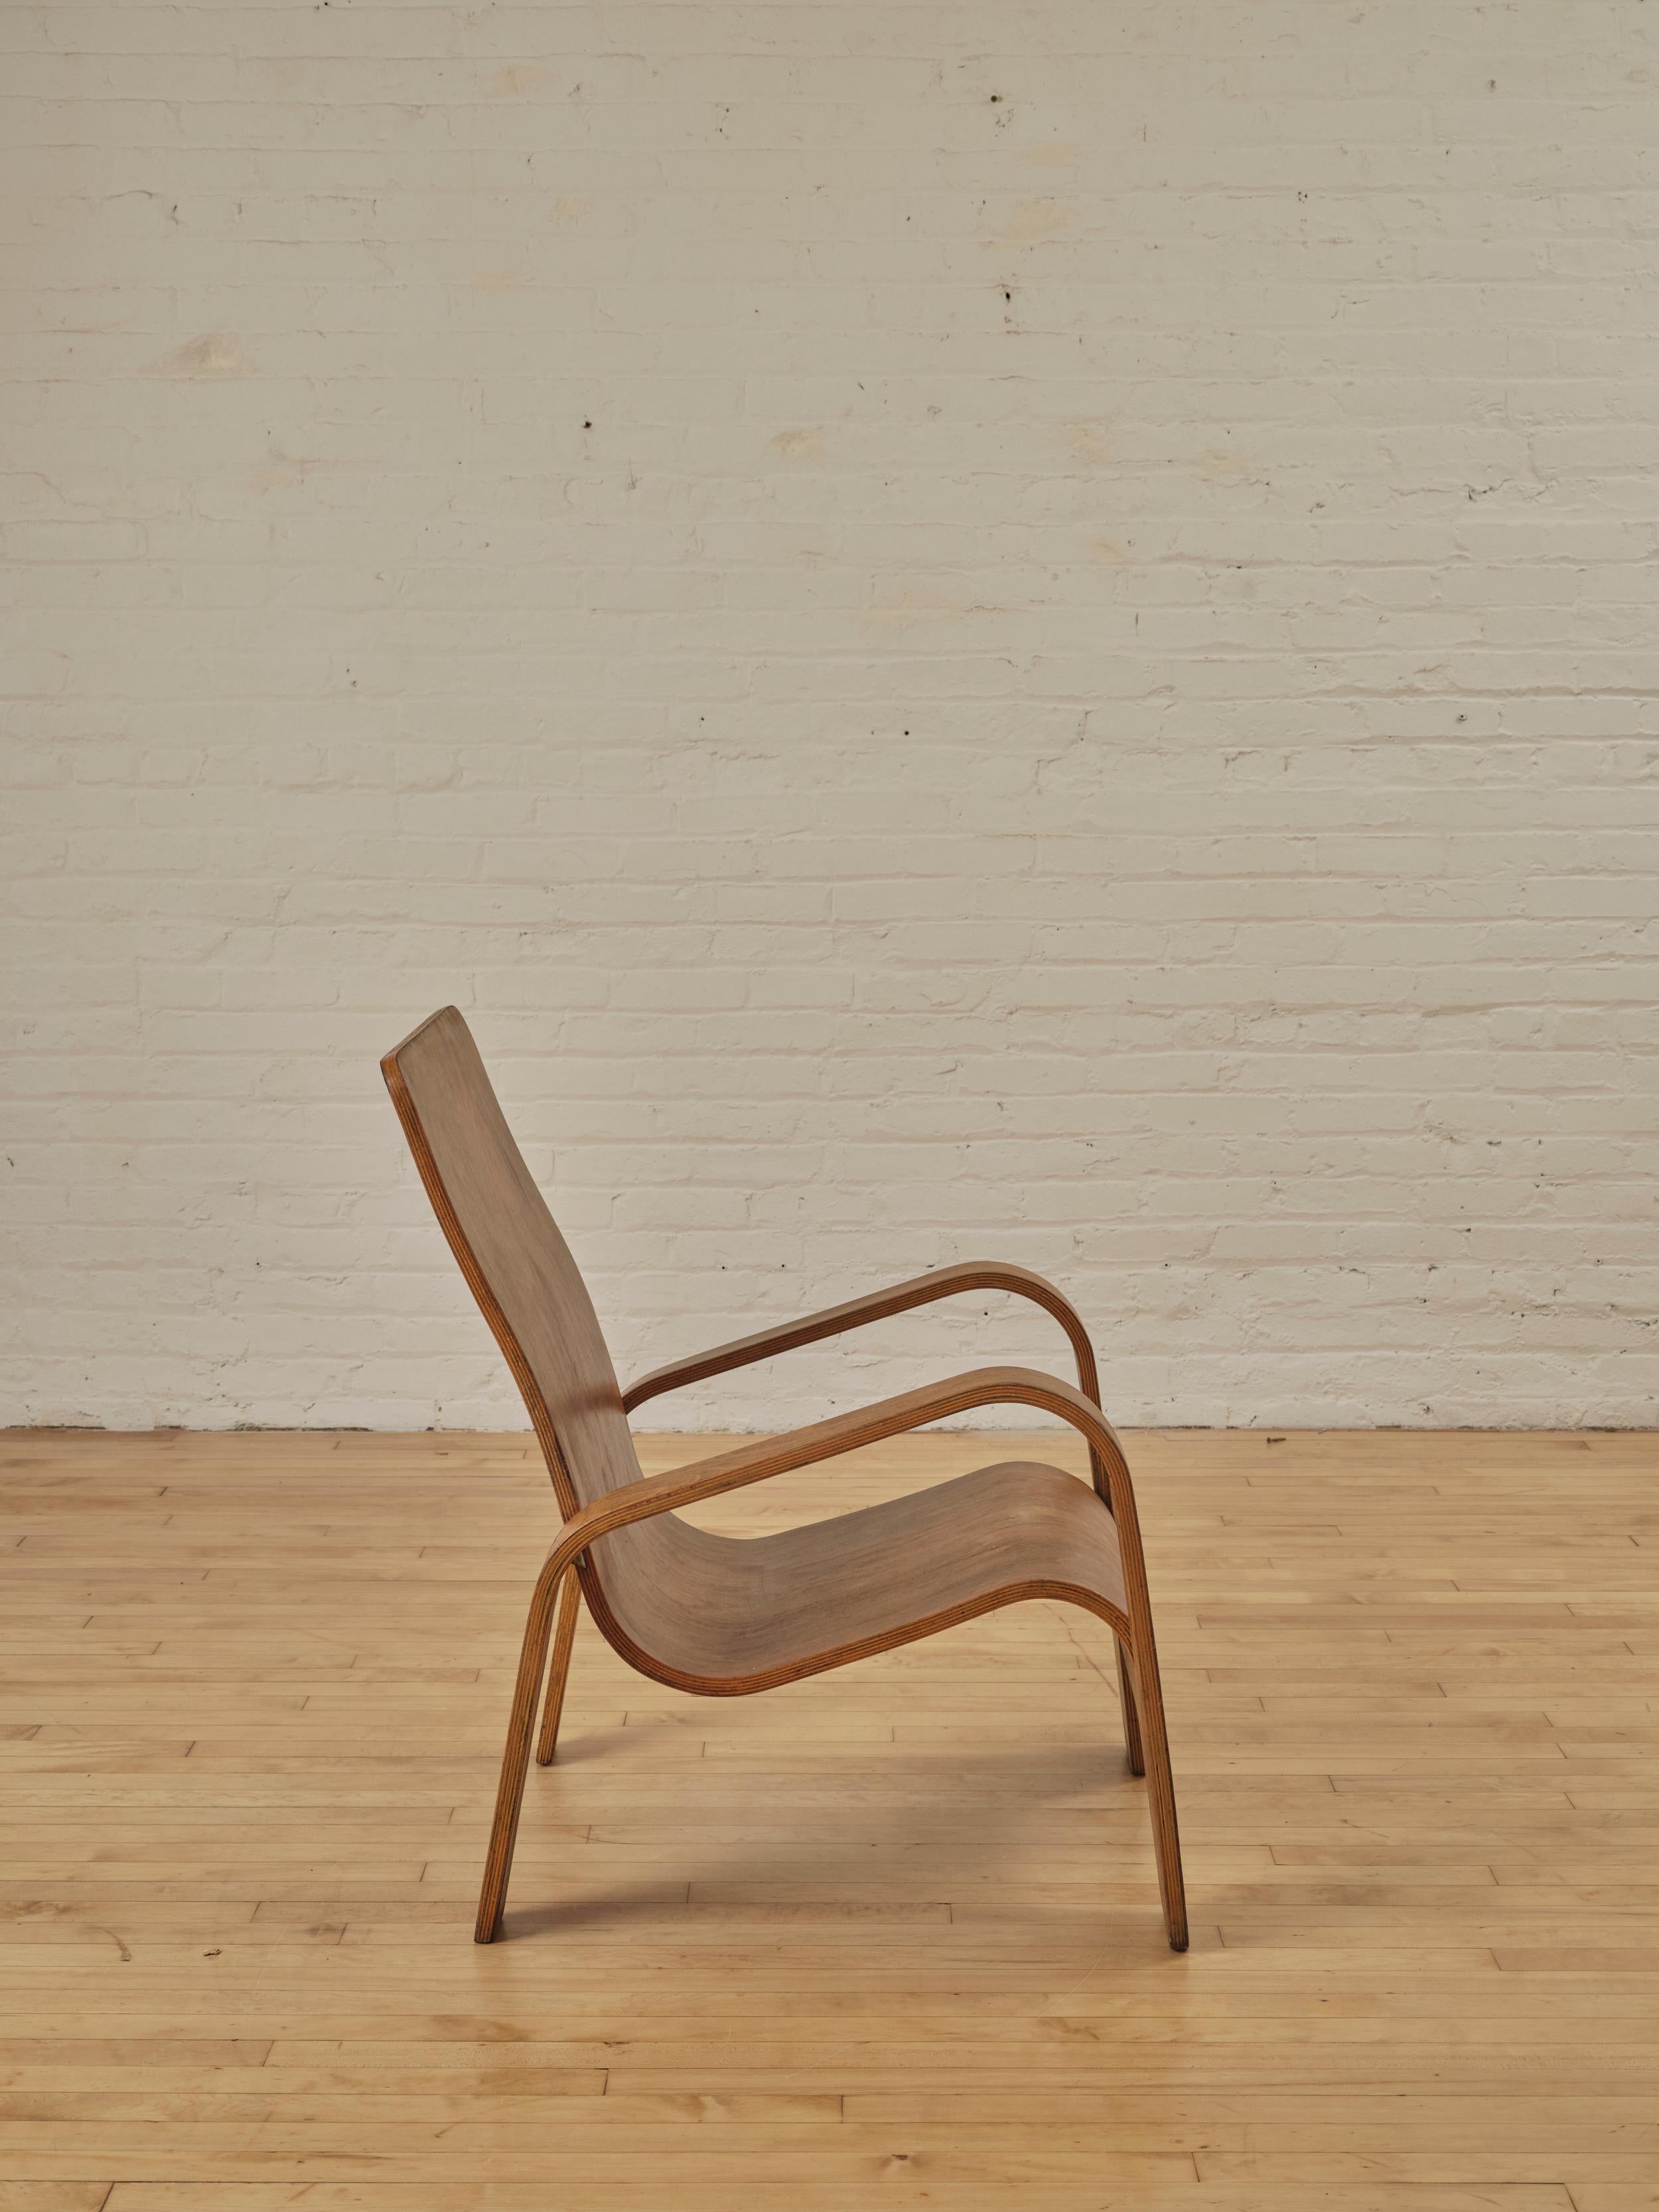 LaWo1 Lounge Chair aus Holz von Han Pieck für Lawo Ommen, Niederlande. Dieser seltene niederländisch-moderne Stuhl ist brillant gestaltet und aus mehreren Schichten Birkensperrholz gefertigt. Die Hinterbeine sind mit Messingwinkeln an der